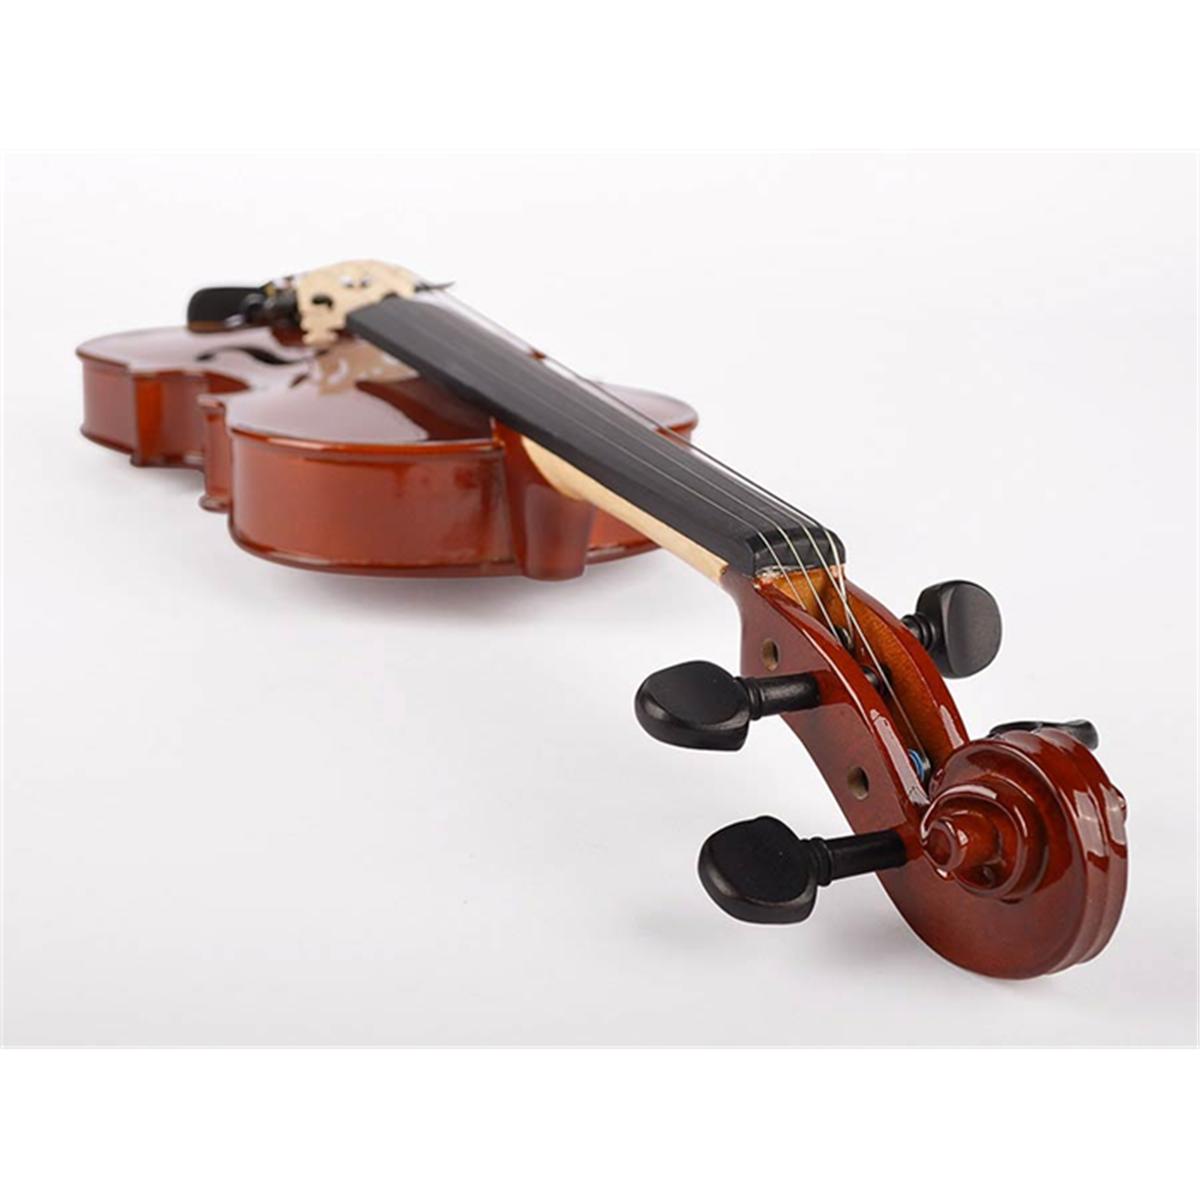 Violon Leonardo LV-1644, violon 4/4 avec étui, archet